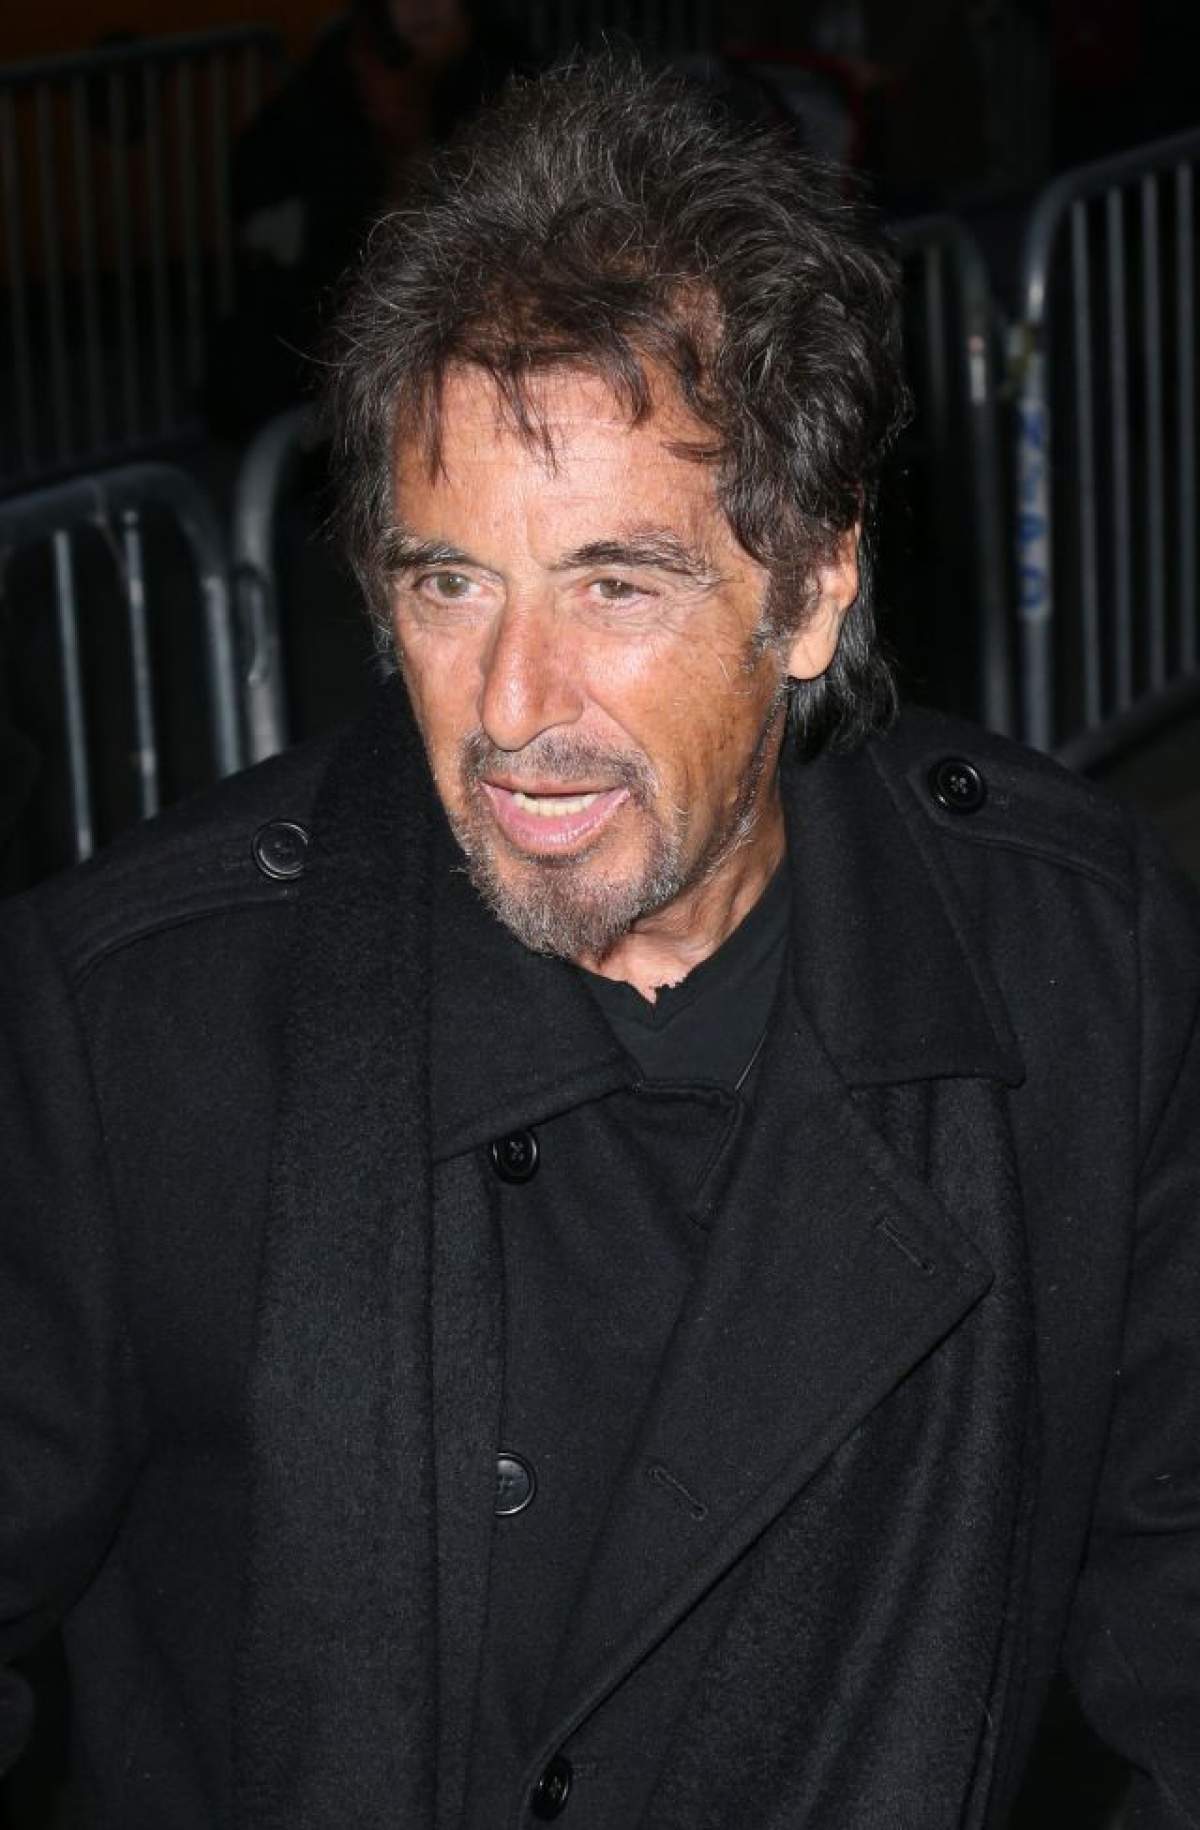 Ce bunăciune de fată are Al Pacino! Te bagă în boală!